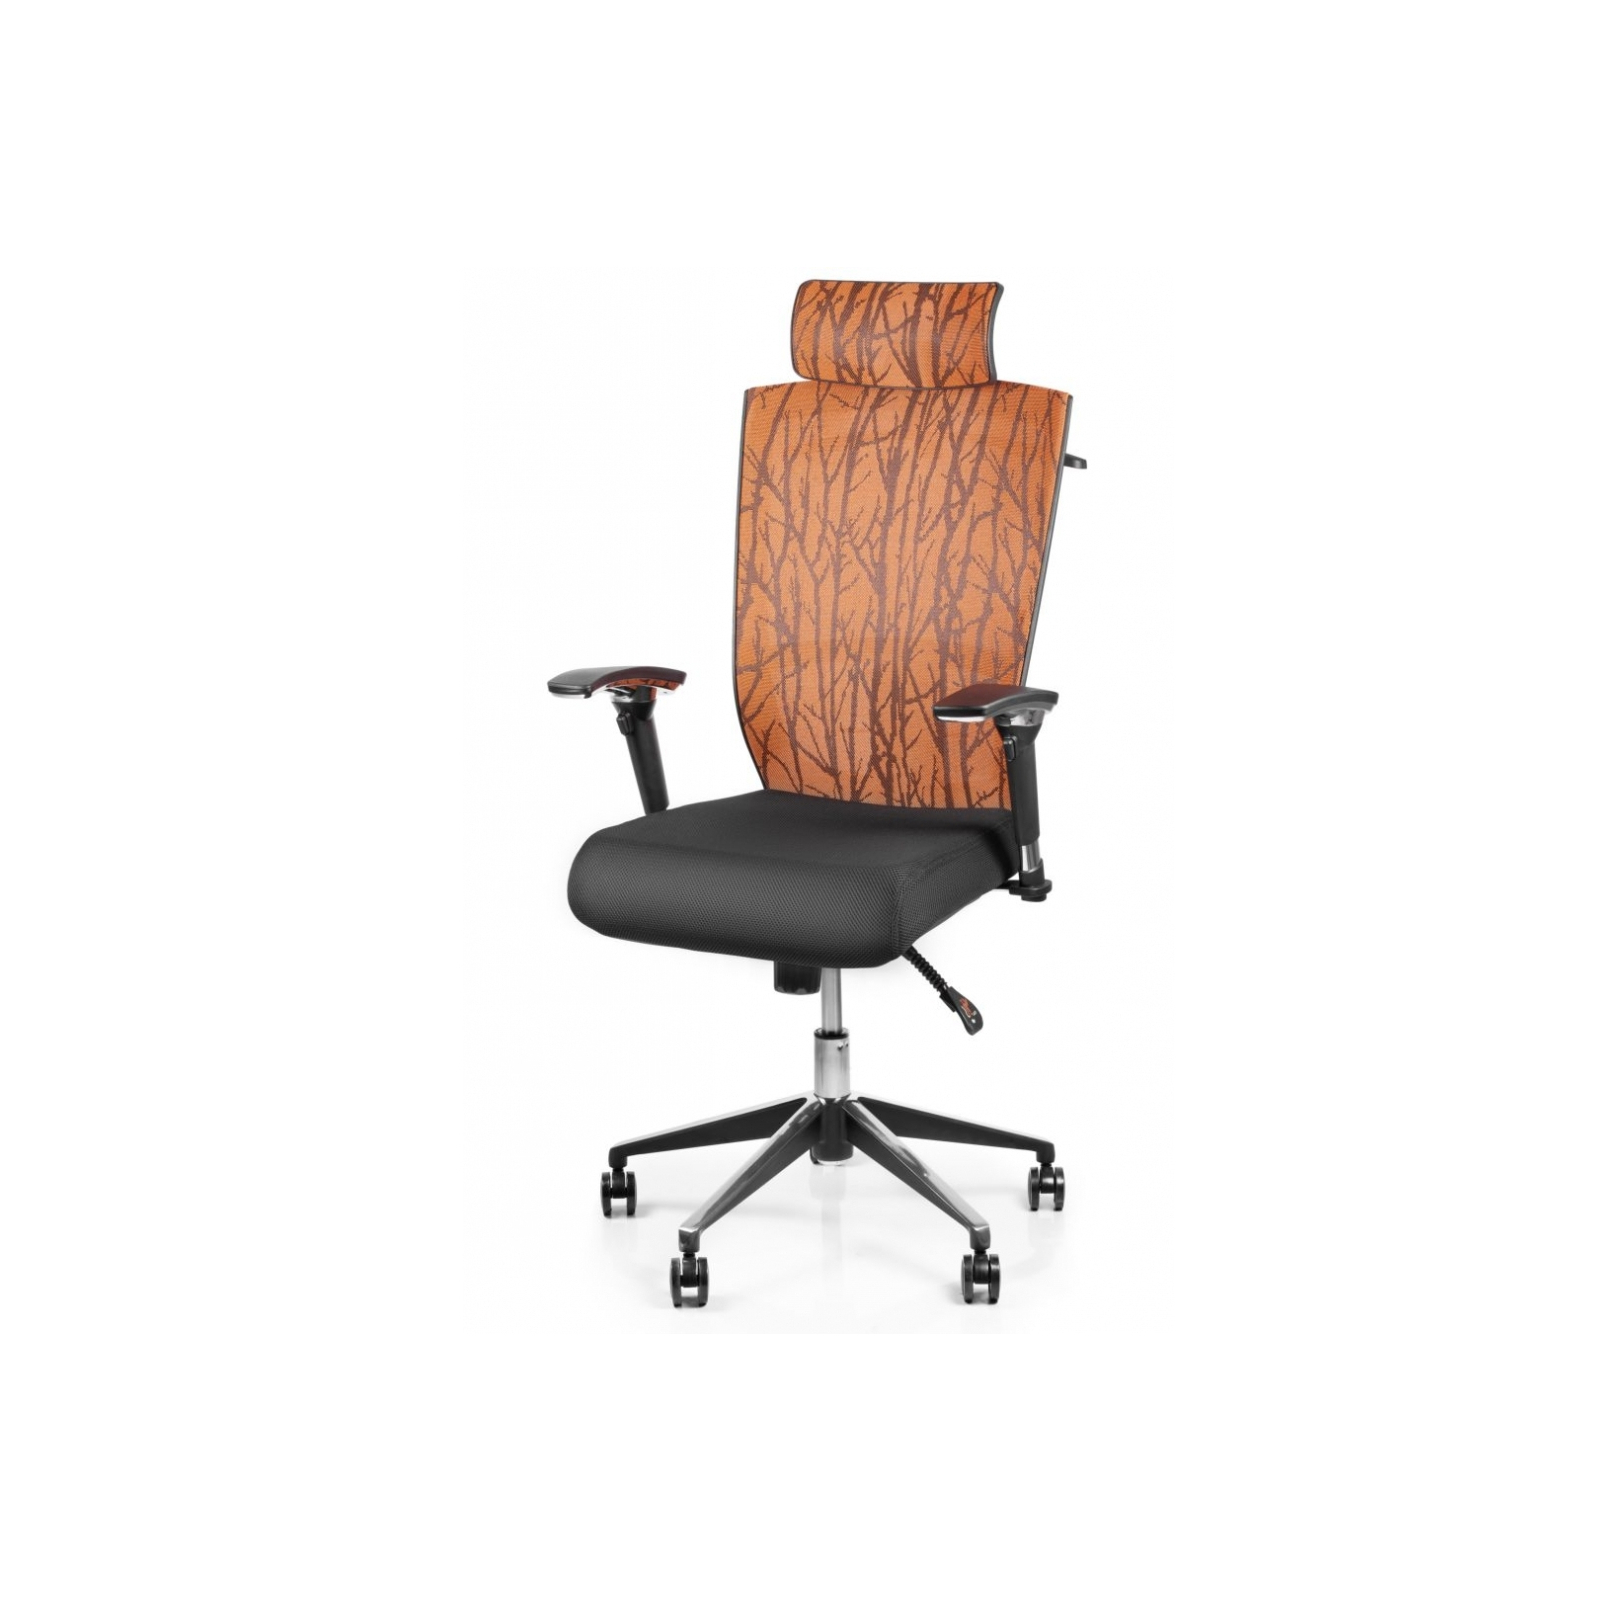 Офисное кресло Barsky Eco (G-3)